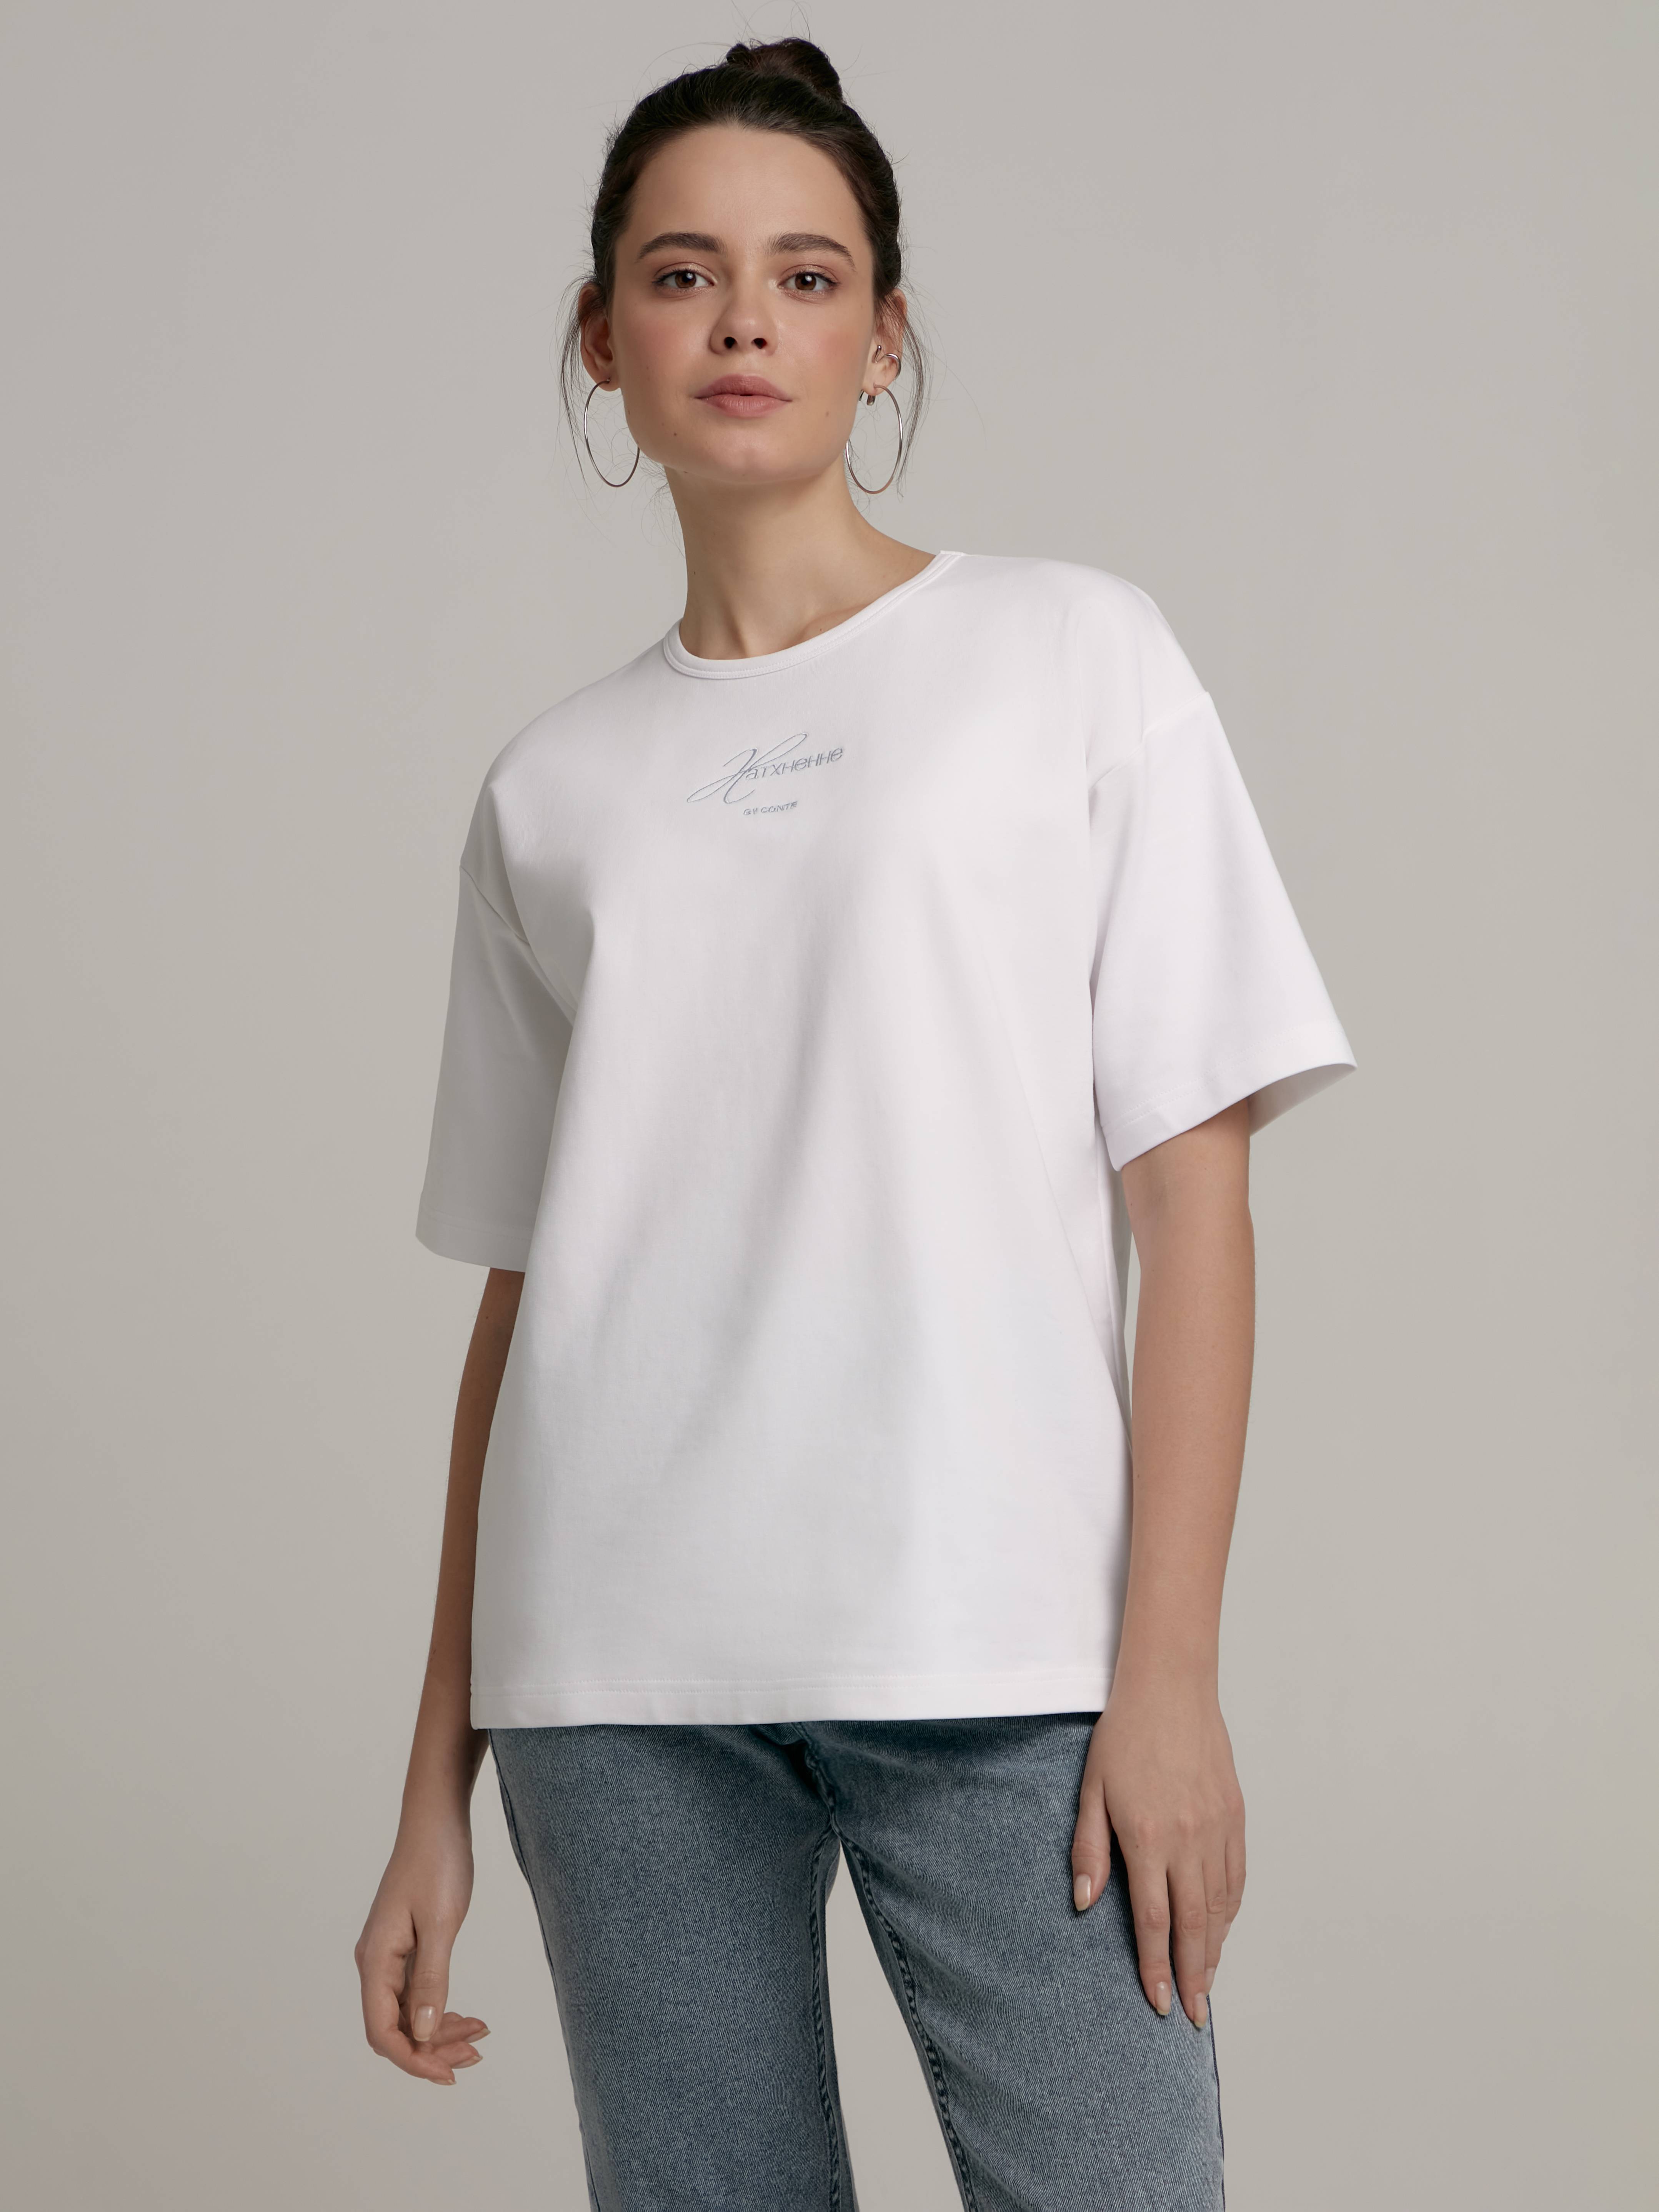 Удлиненная футболка свободного кроя с вышивкой «Натхненне» LD 2307 Conte ⭐️, цвет white, размер 170-84/xs - фото 1